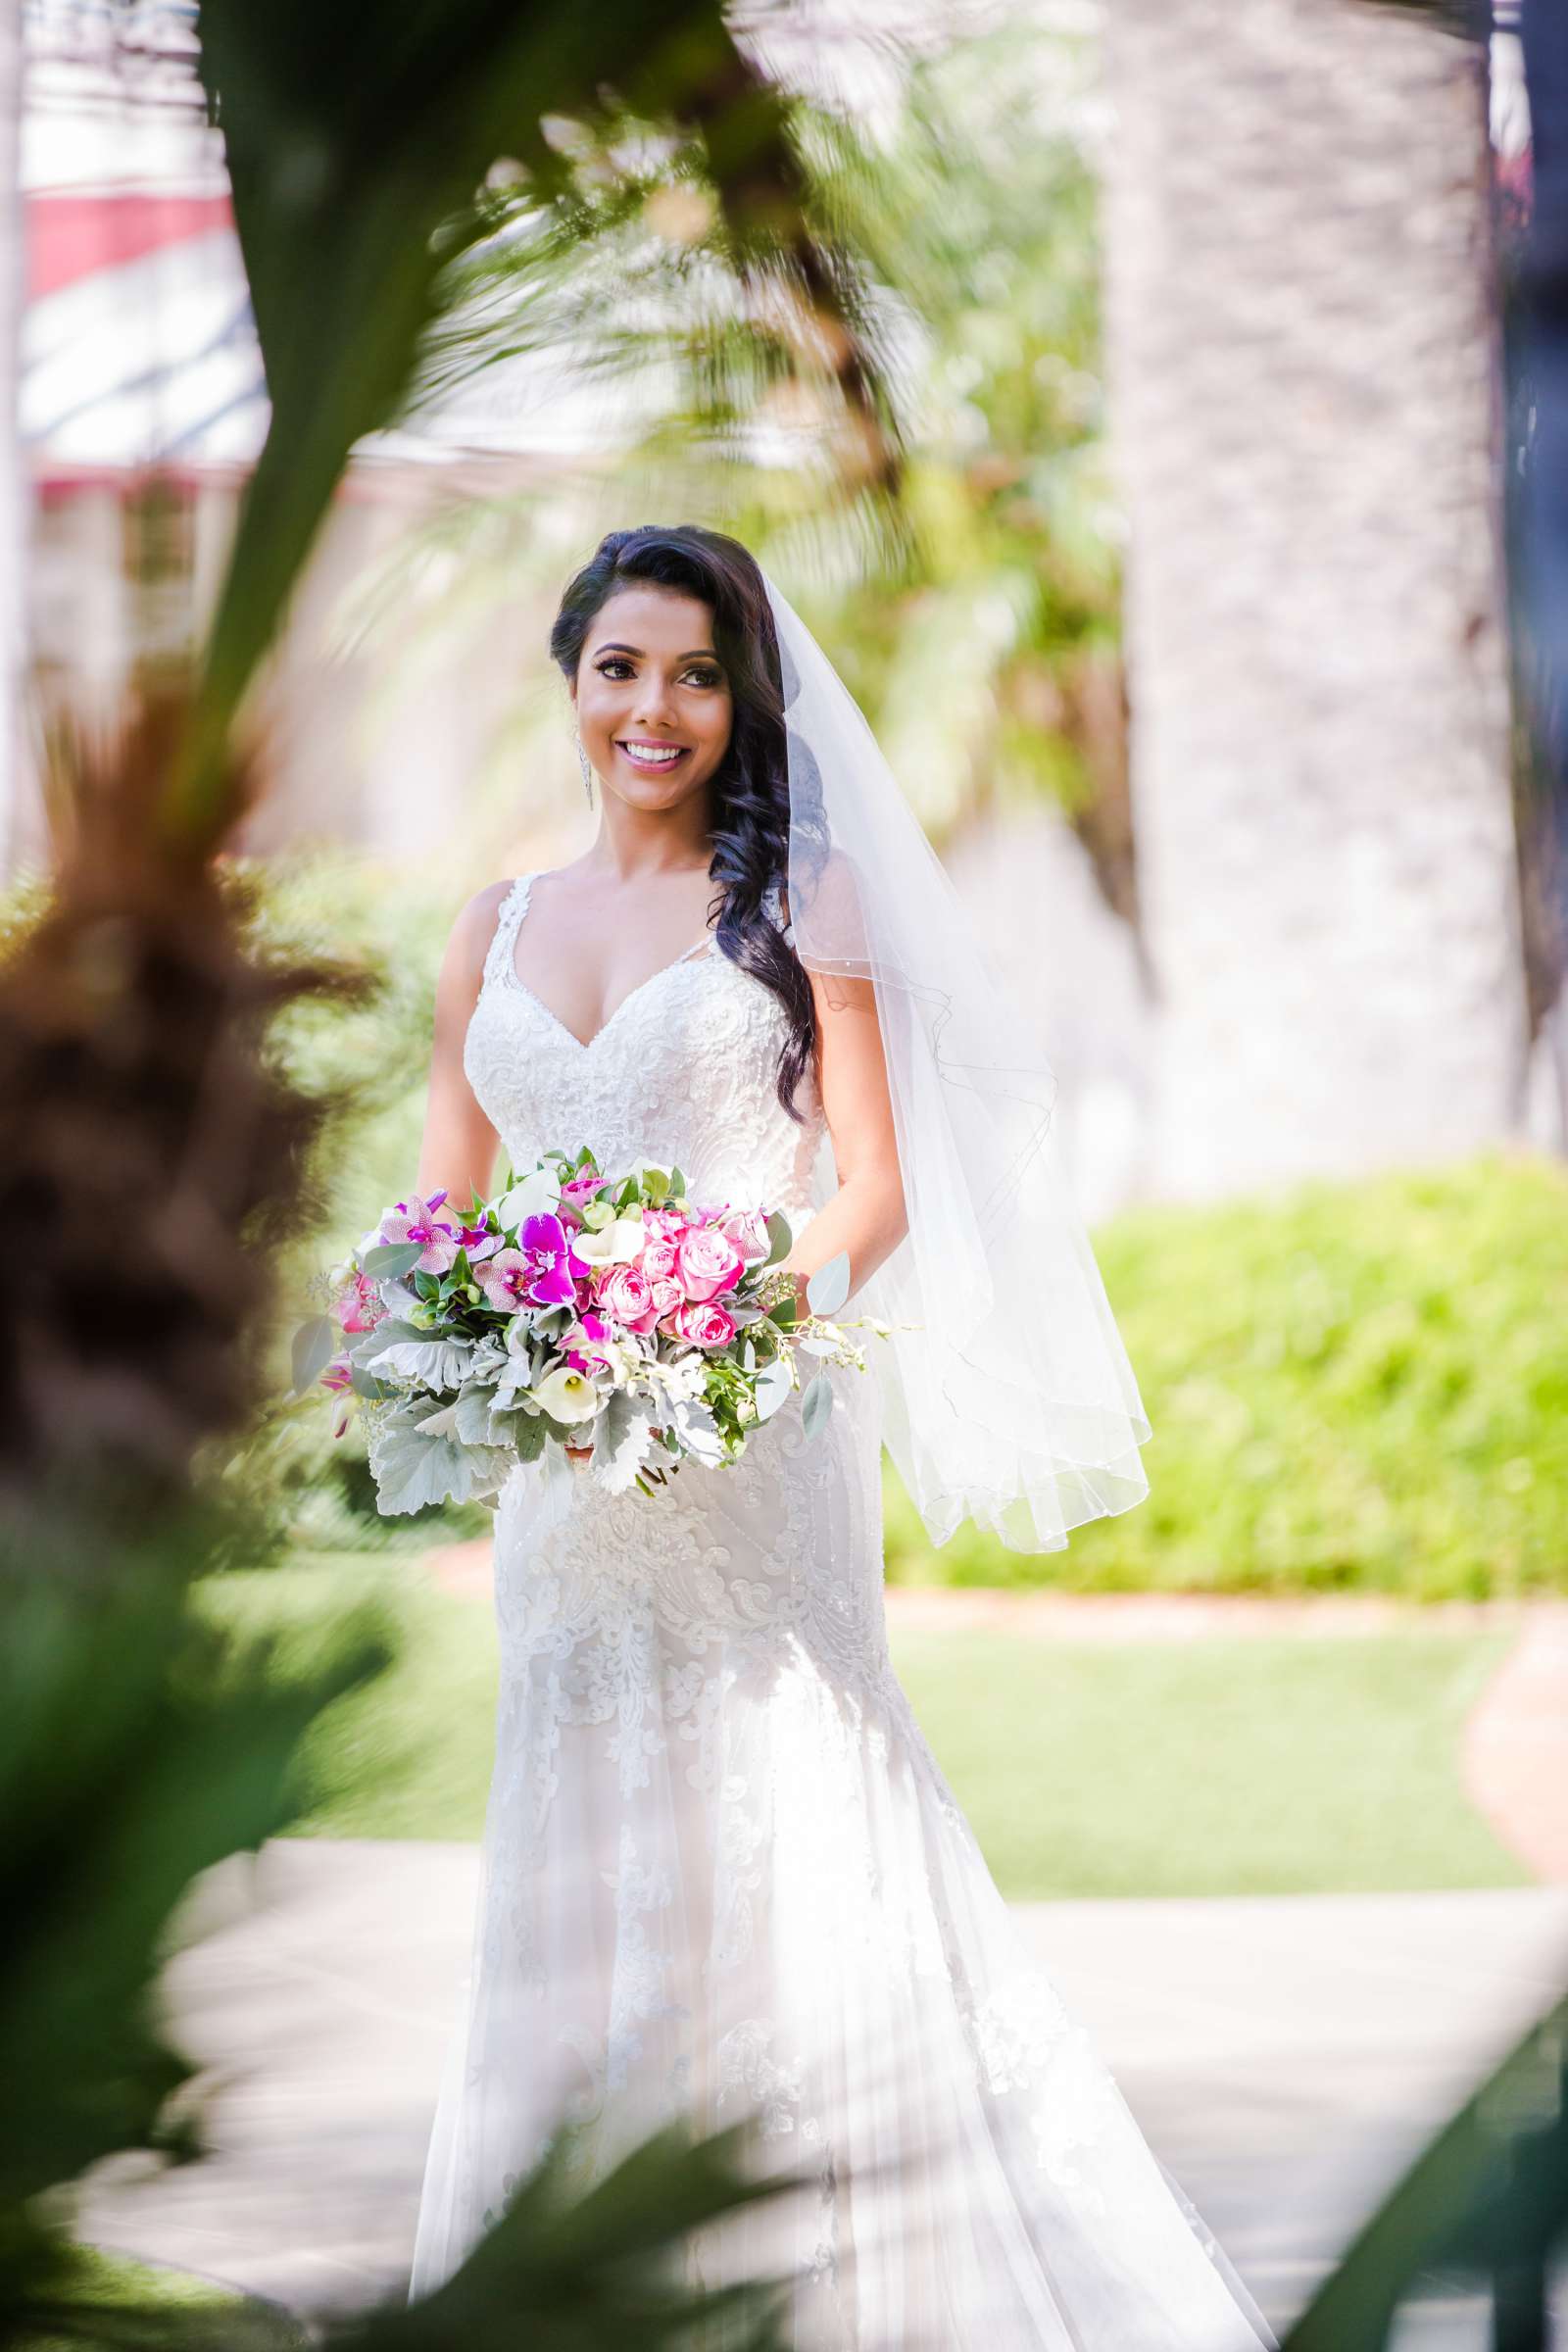 Hotel Del Coronado Wedding, Sabrina and Gehaan Wedding Photo #409117 by True Photography